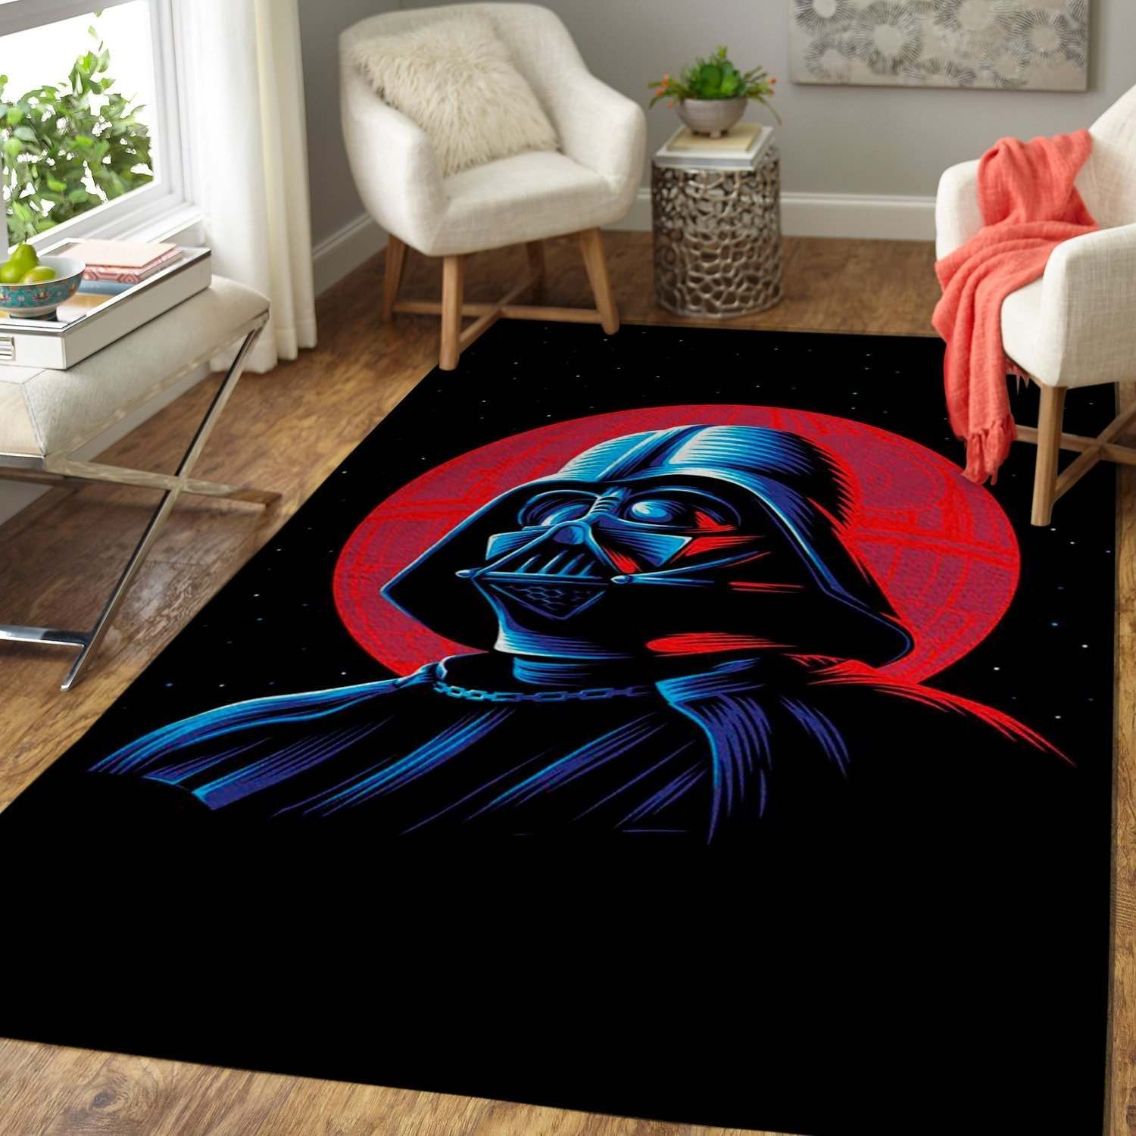 Star War Fans Darth Vader Area Rug – Movie IB73172 Rug Carpet